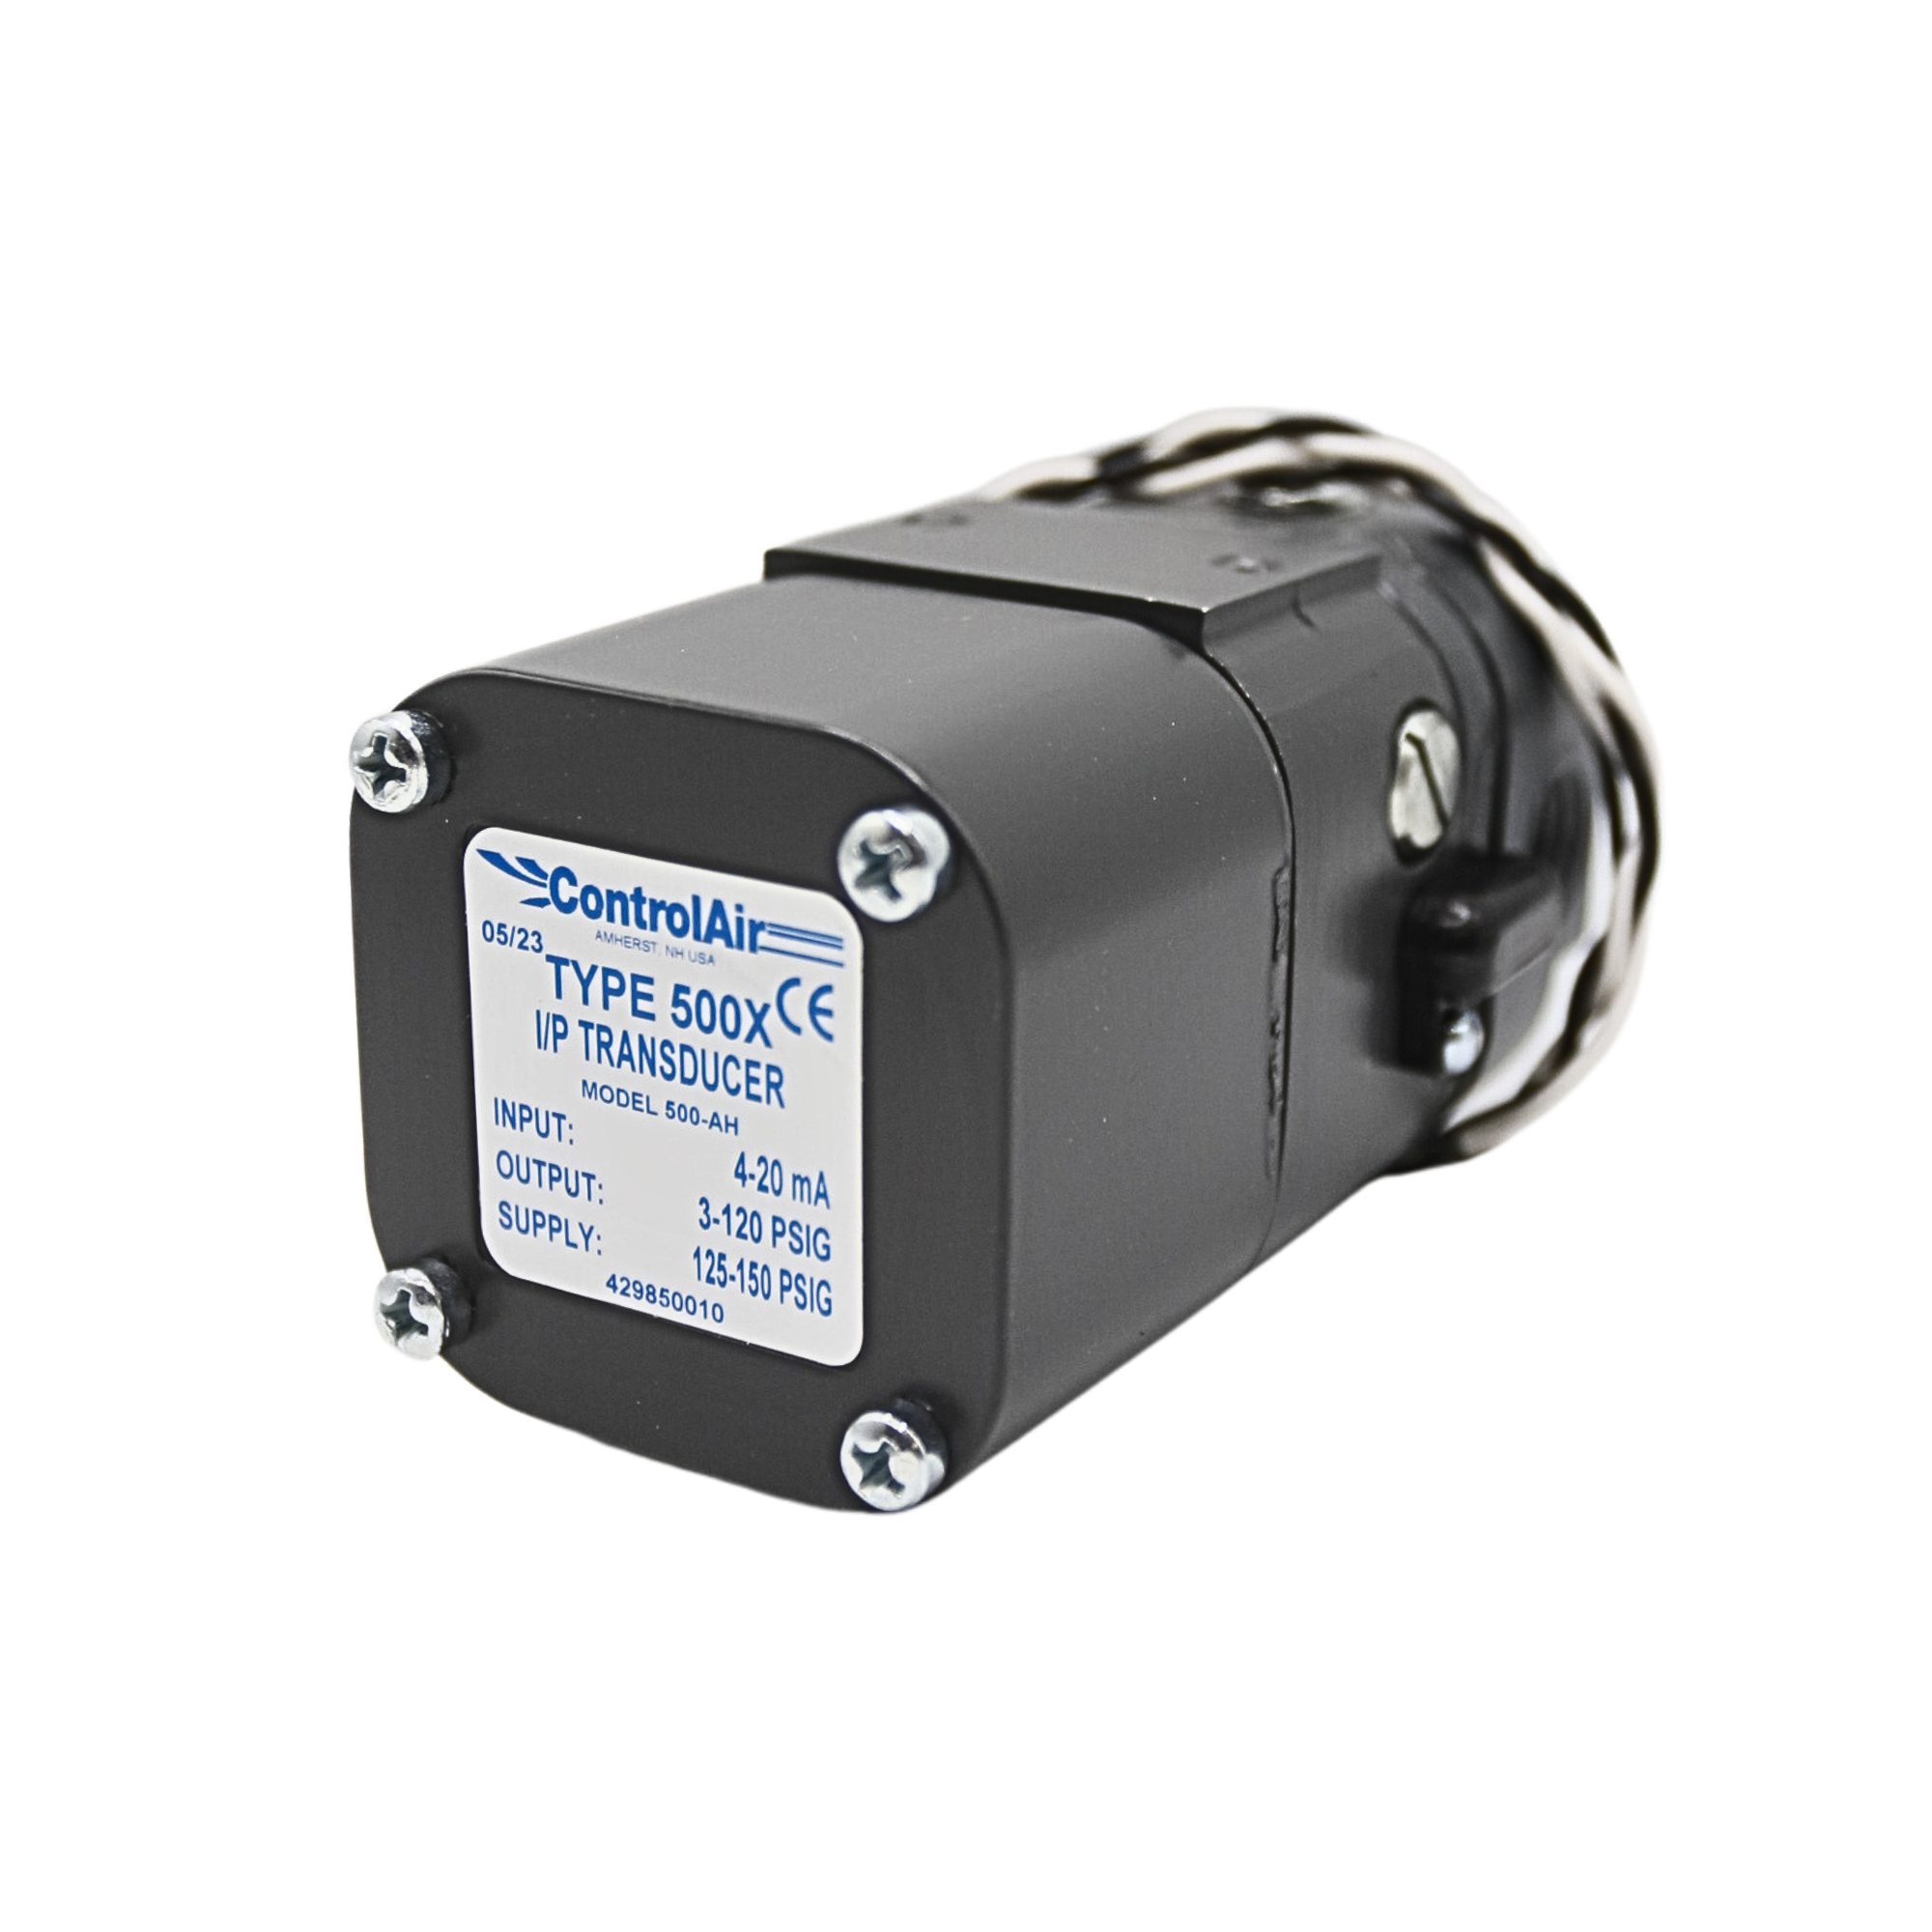 Transducer I/P E/P 4-20mA, 3-120 PSI 1/4" NPT | 500-AH used on Control Air product line